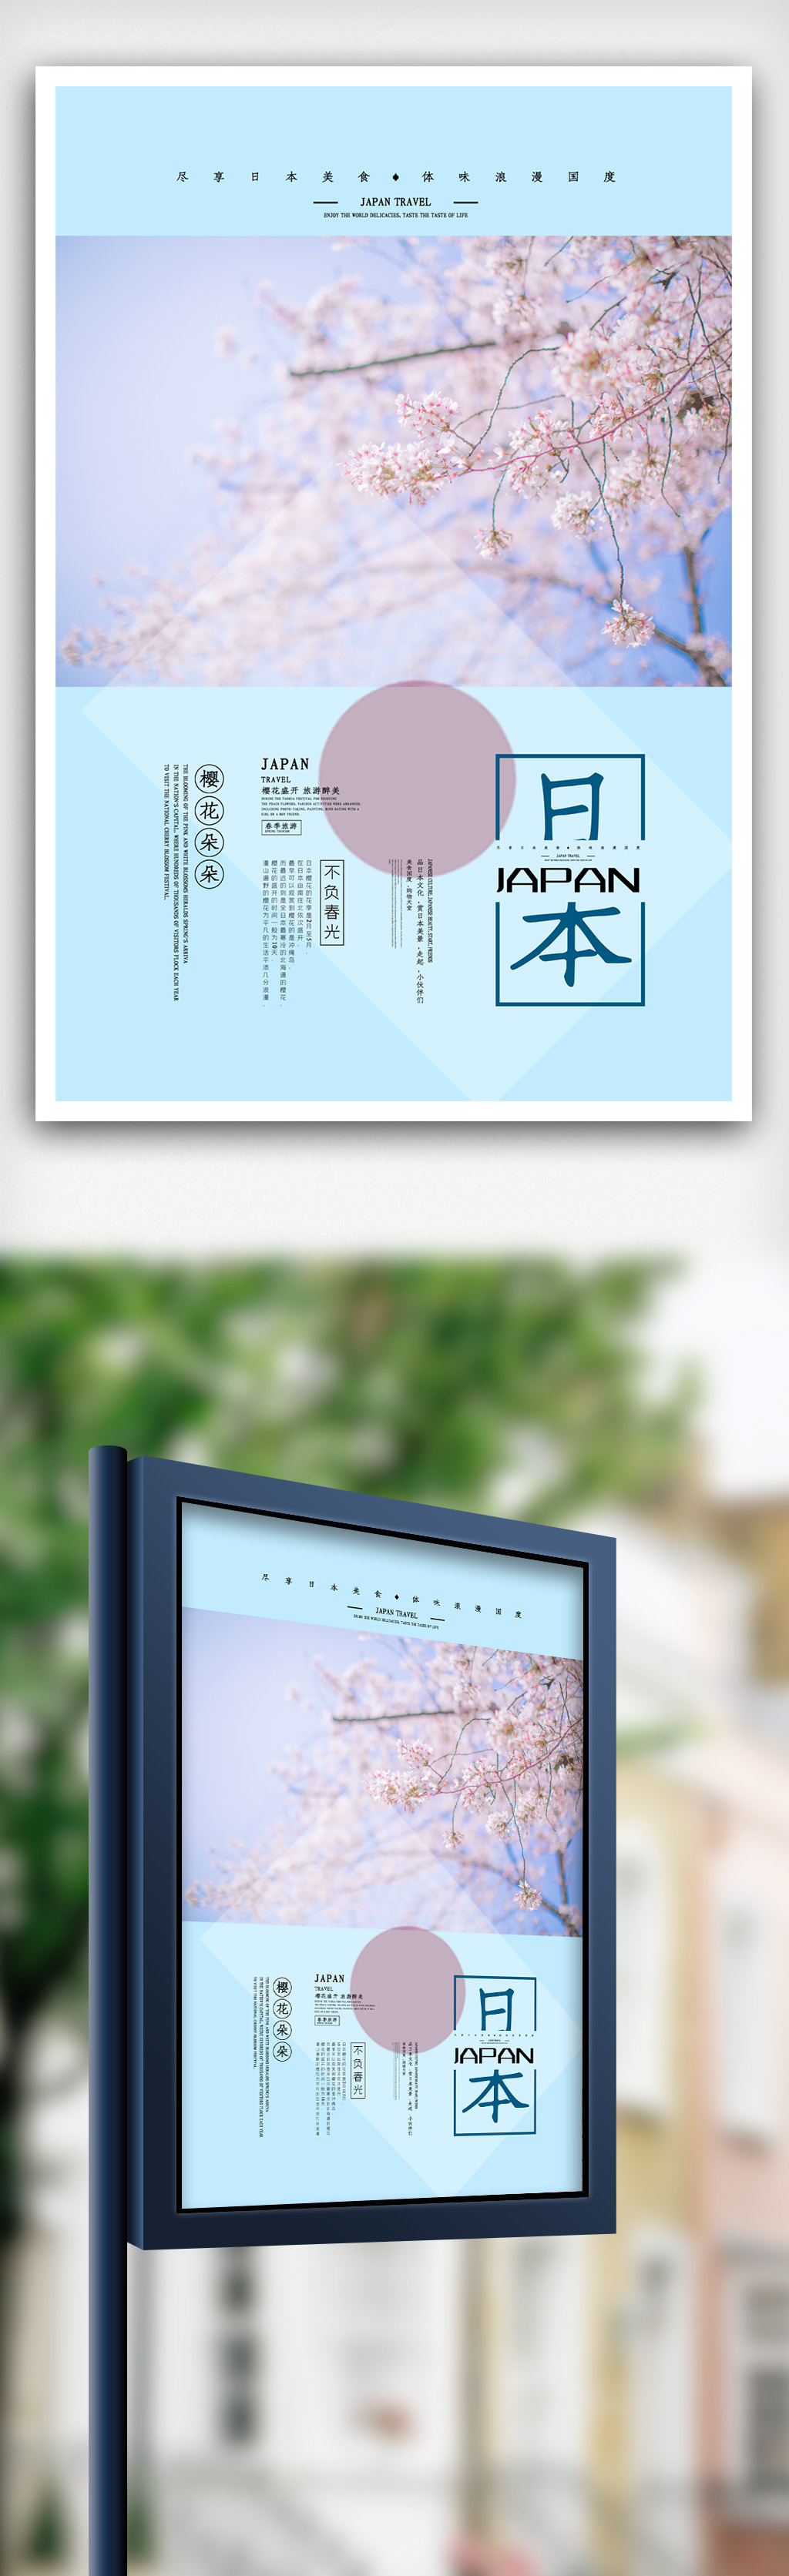 浅蓝色简洁小清新日本游旅游海报图片